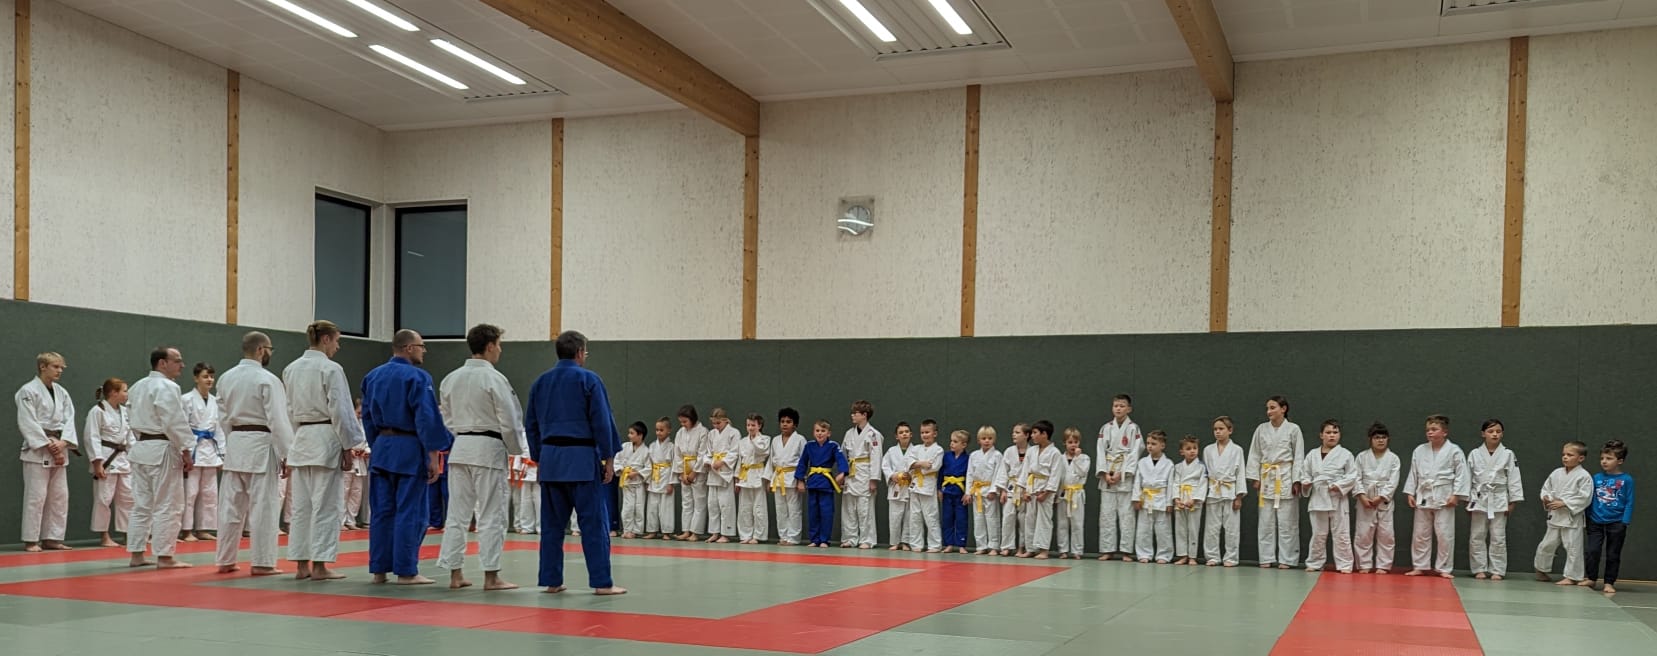 Jahresabschluss bei der Judogemeinschaft Ladbergen